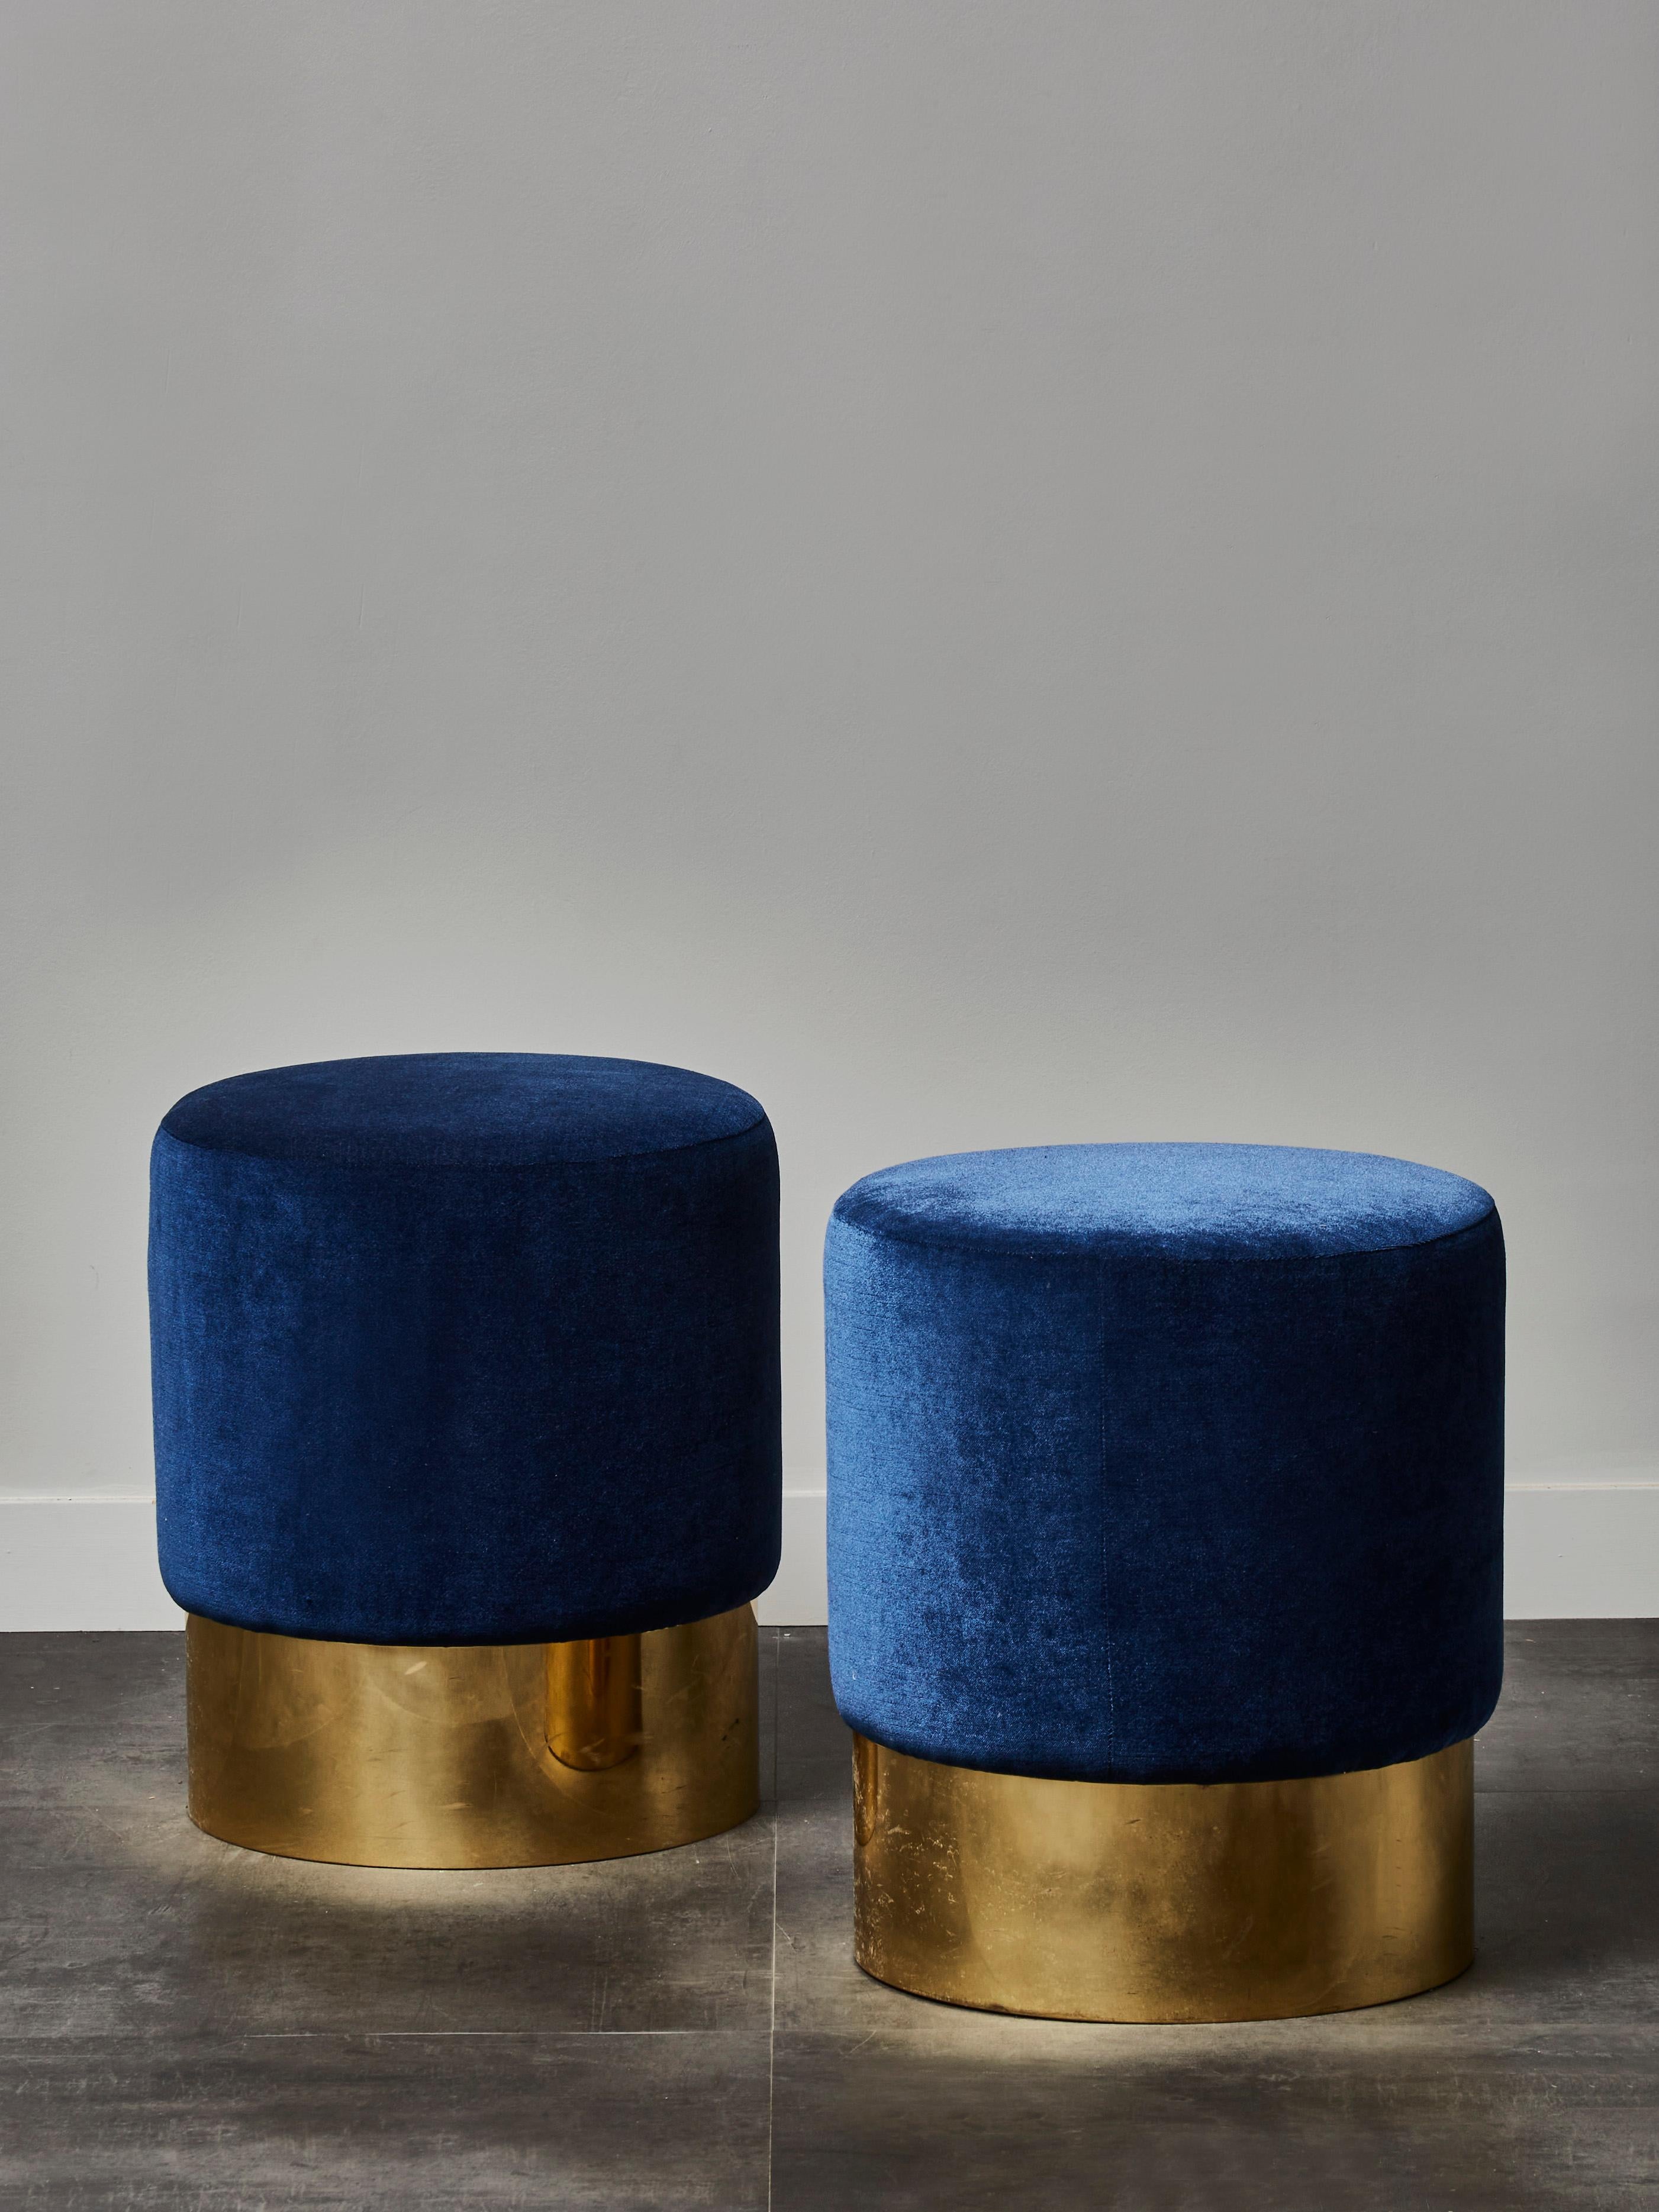 Elegant pair of stools upholstered with blue velvet. Brass base.
Creation by Studio Glustin.